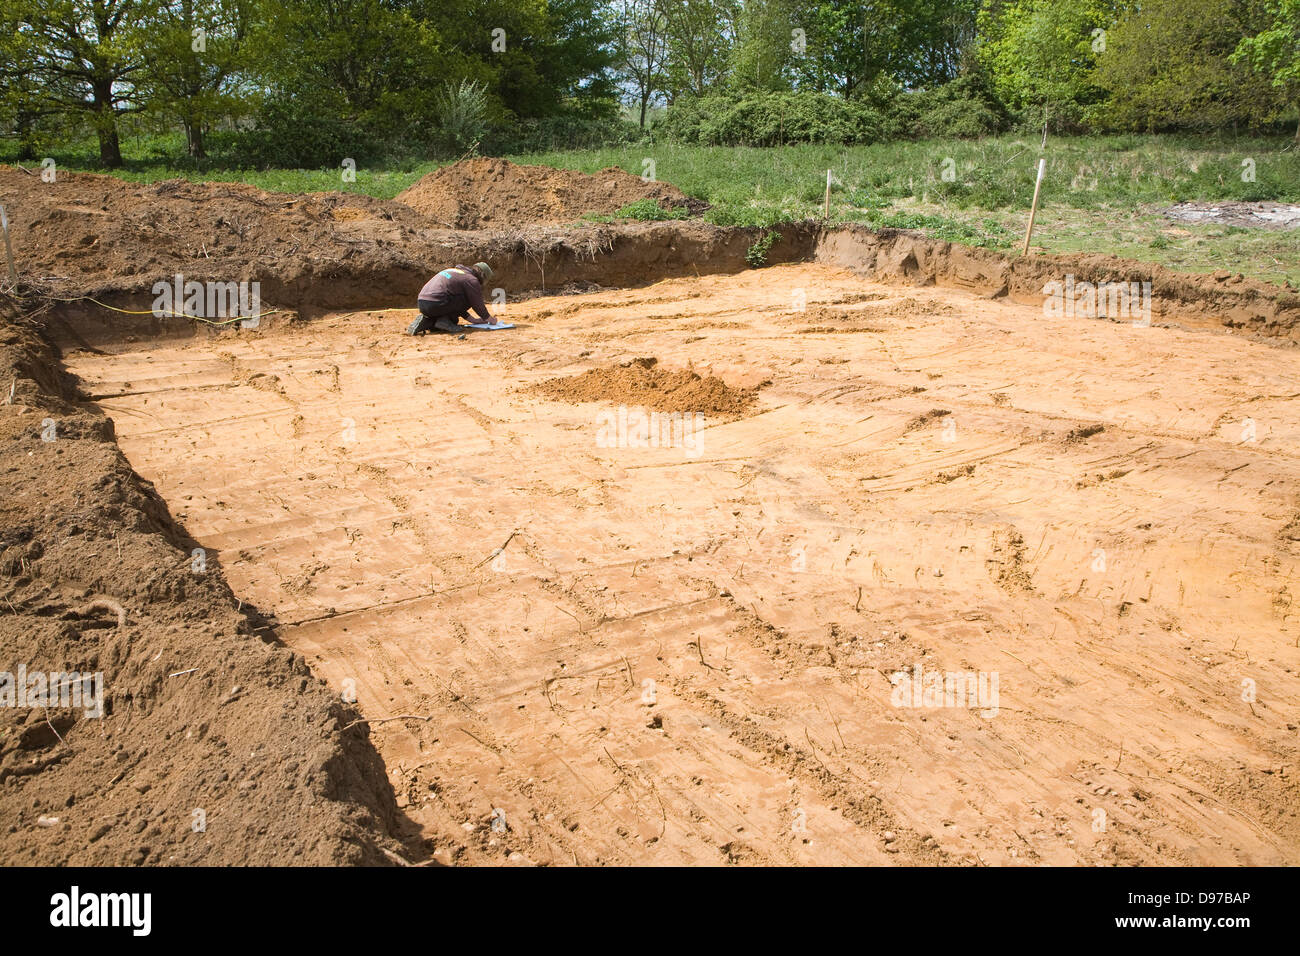 Les archéologues découvrent la préhistoire limite de champ lors de l'excavation de fossés sur nouveau terrain, Shottisham, Suffolk, Angleterre Banque D'Images